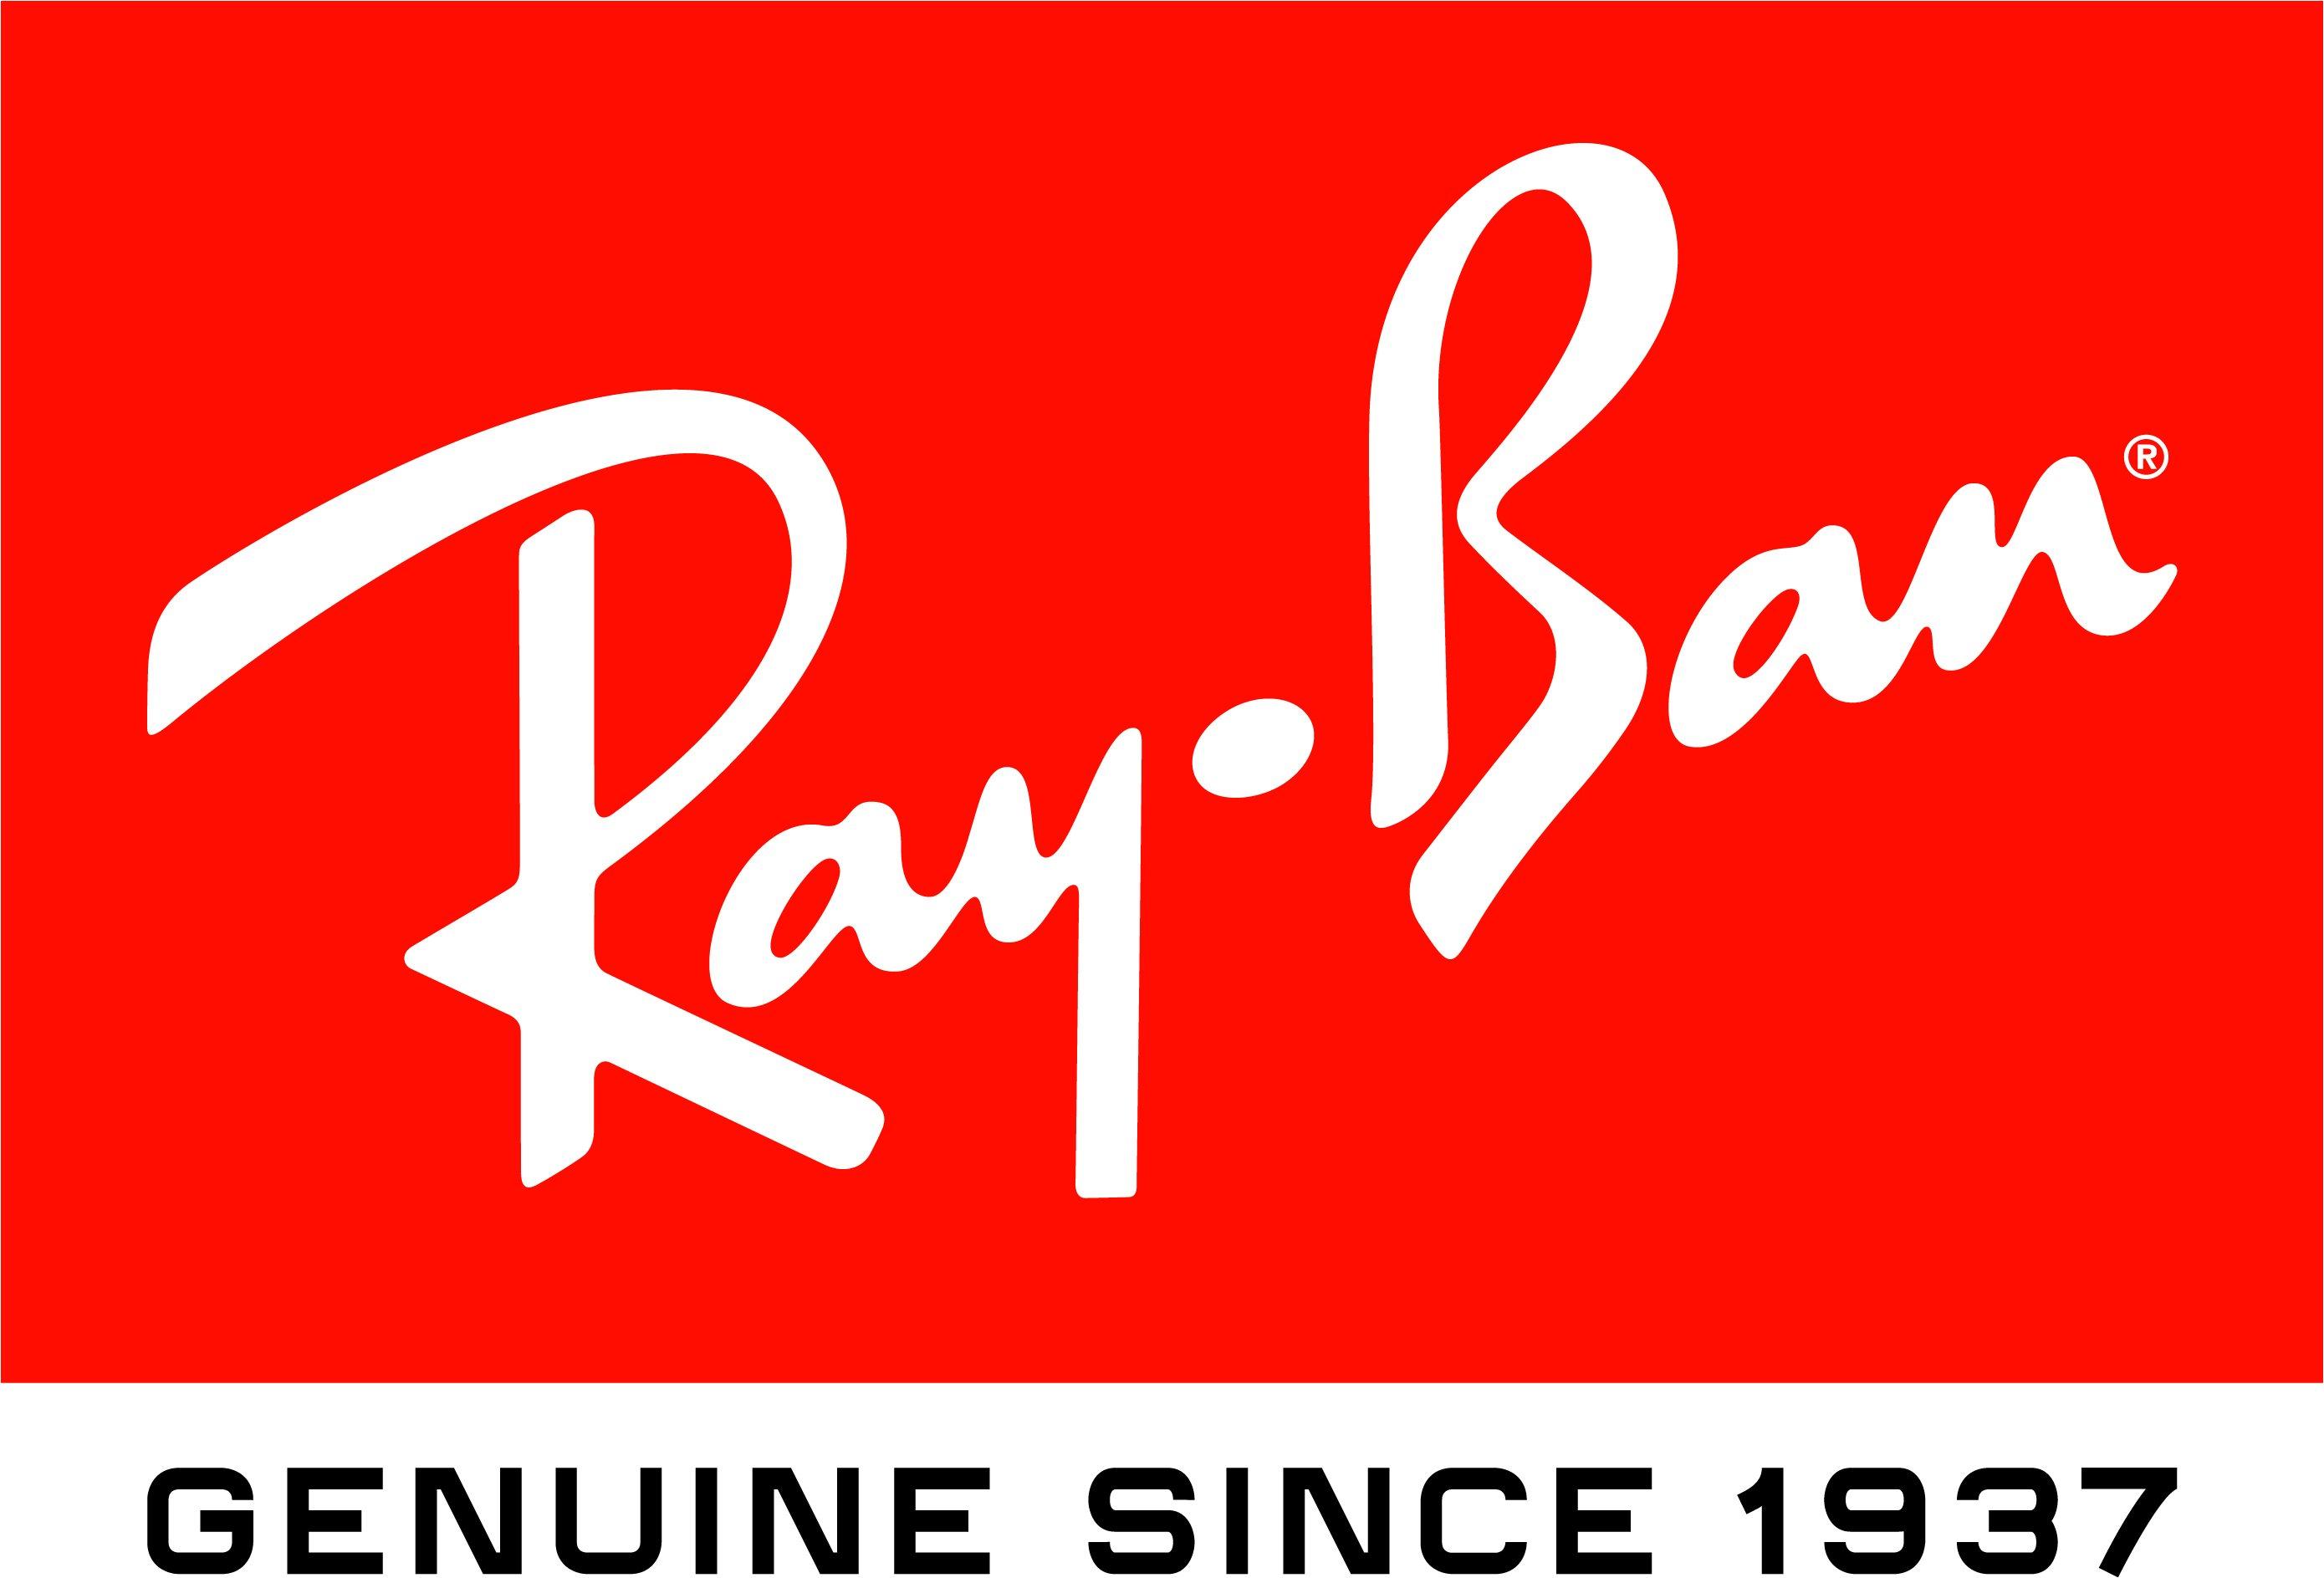 Logo of Ray-Ban